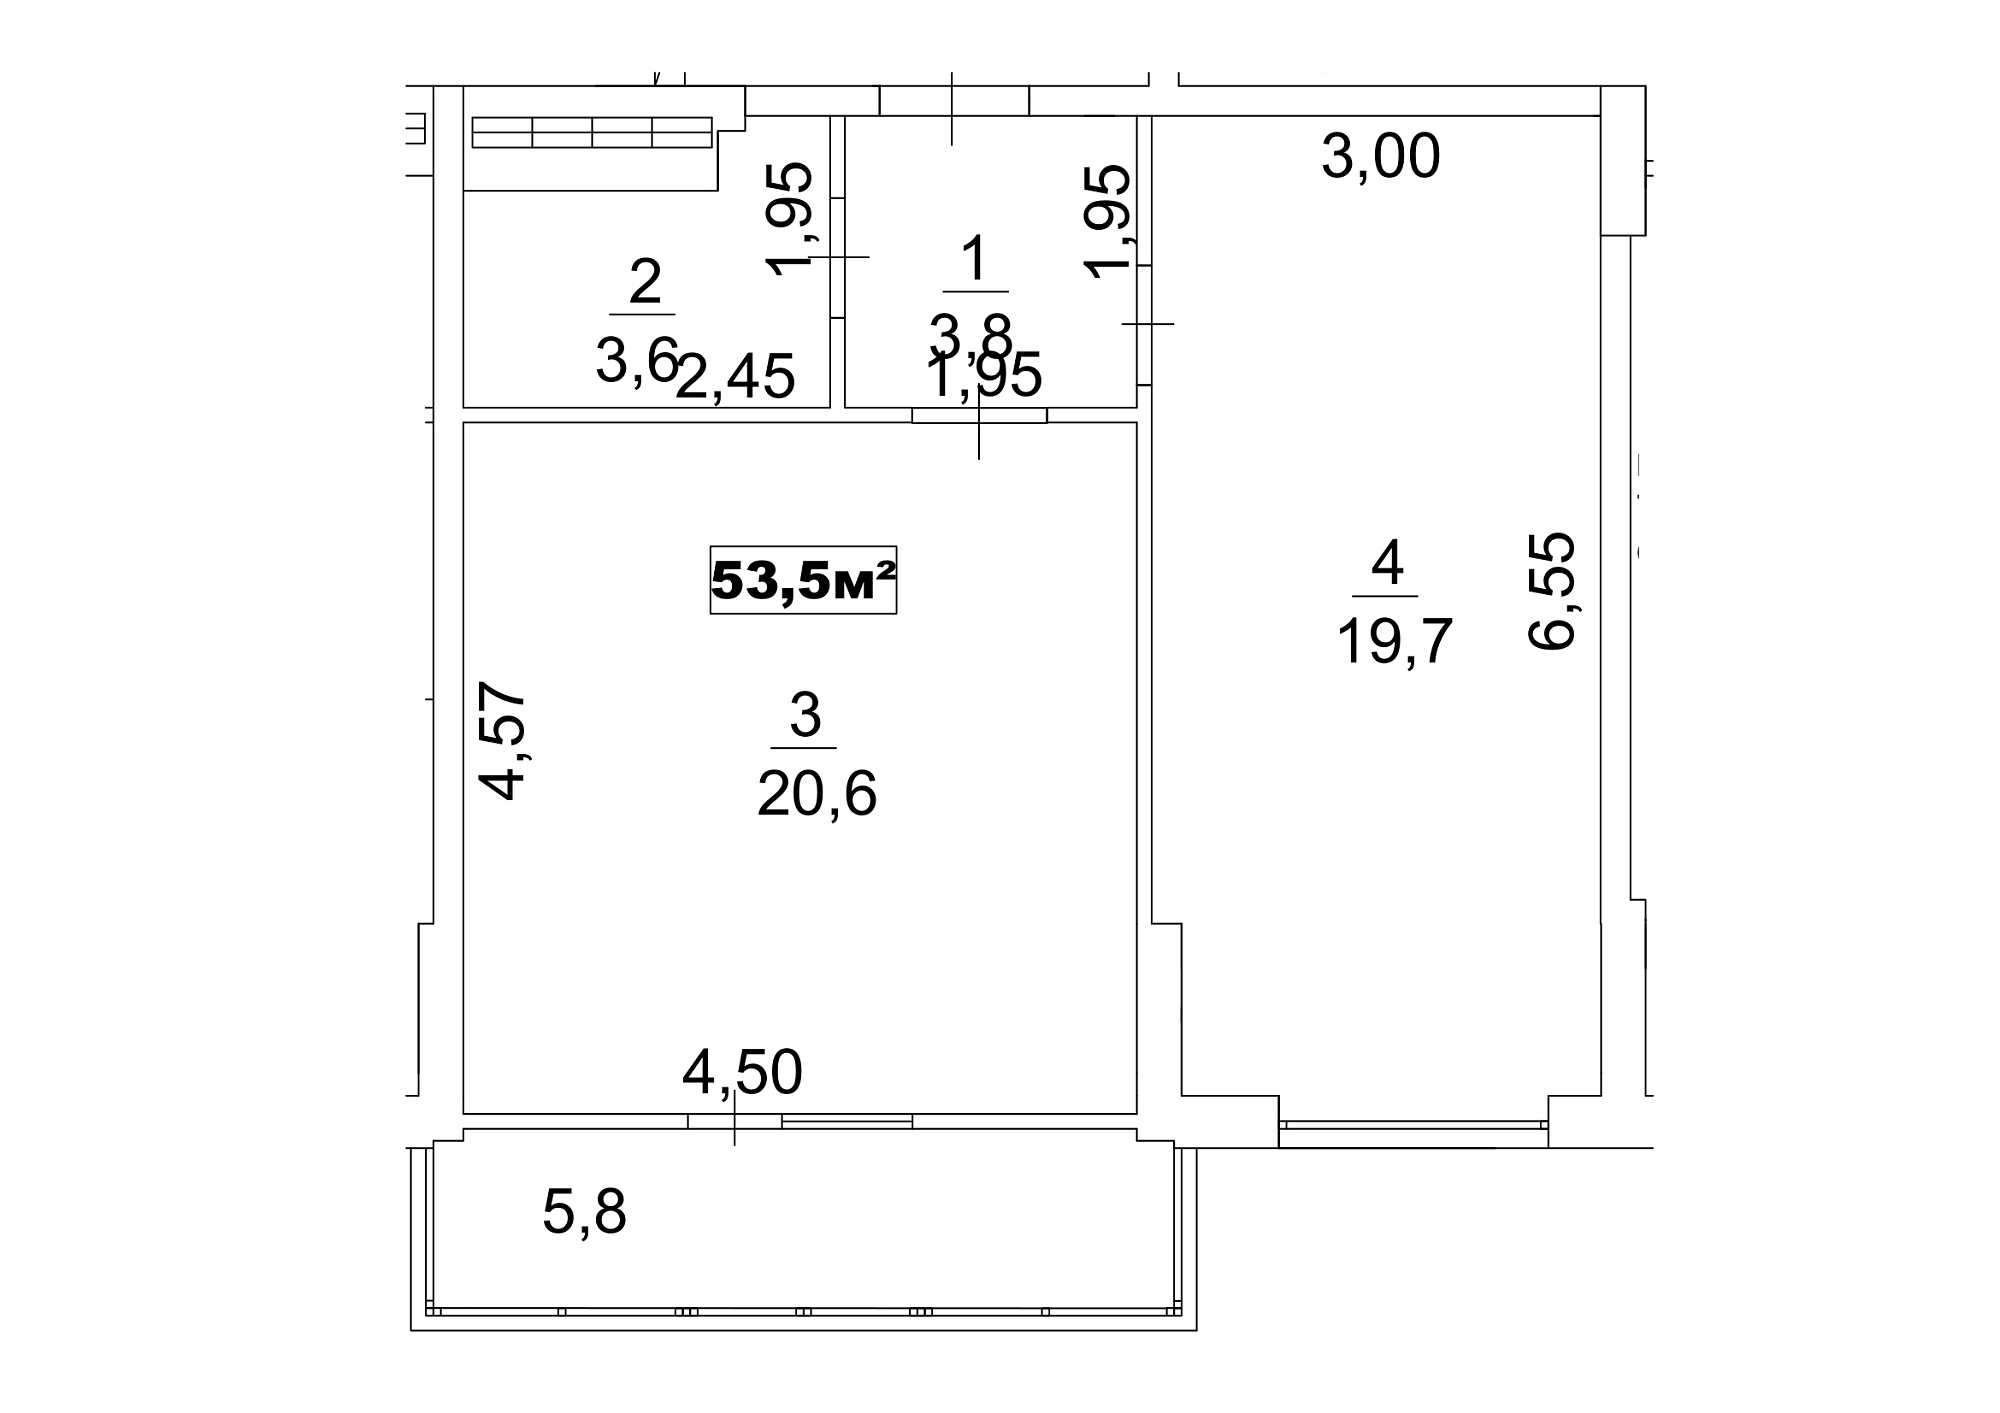 Планировка 1-к квартира площей 53.5м2, AB-13-01/00005.